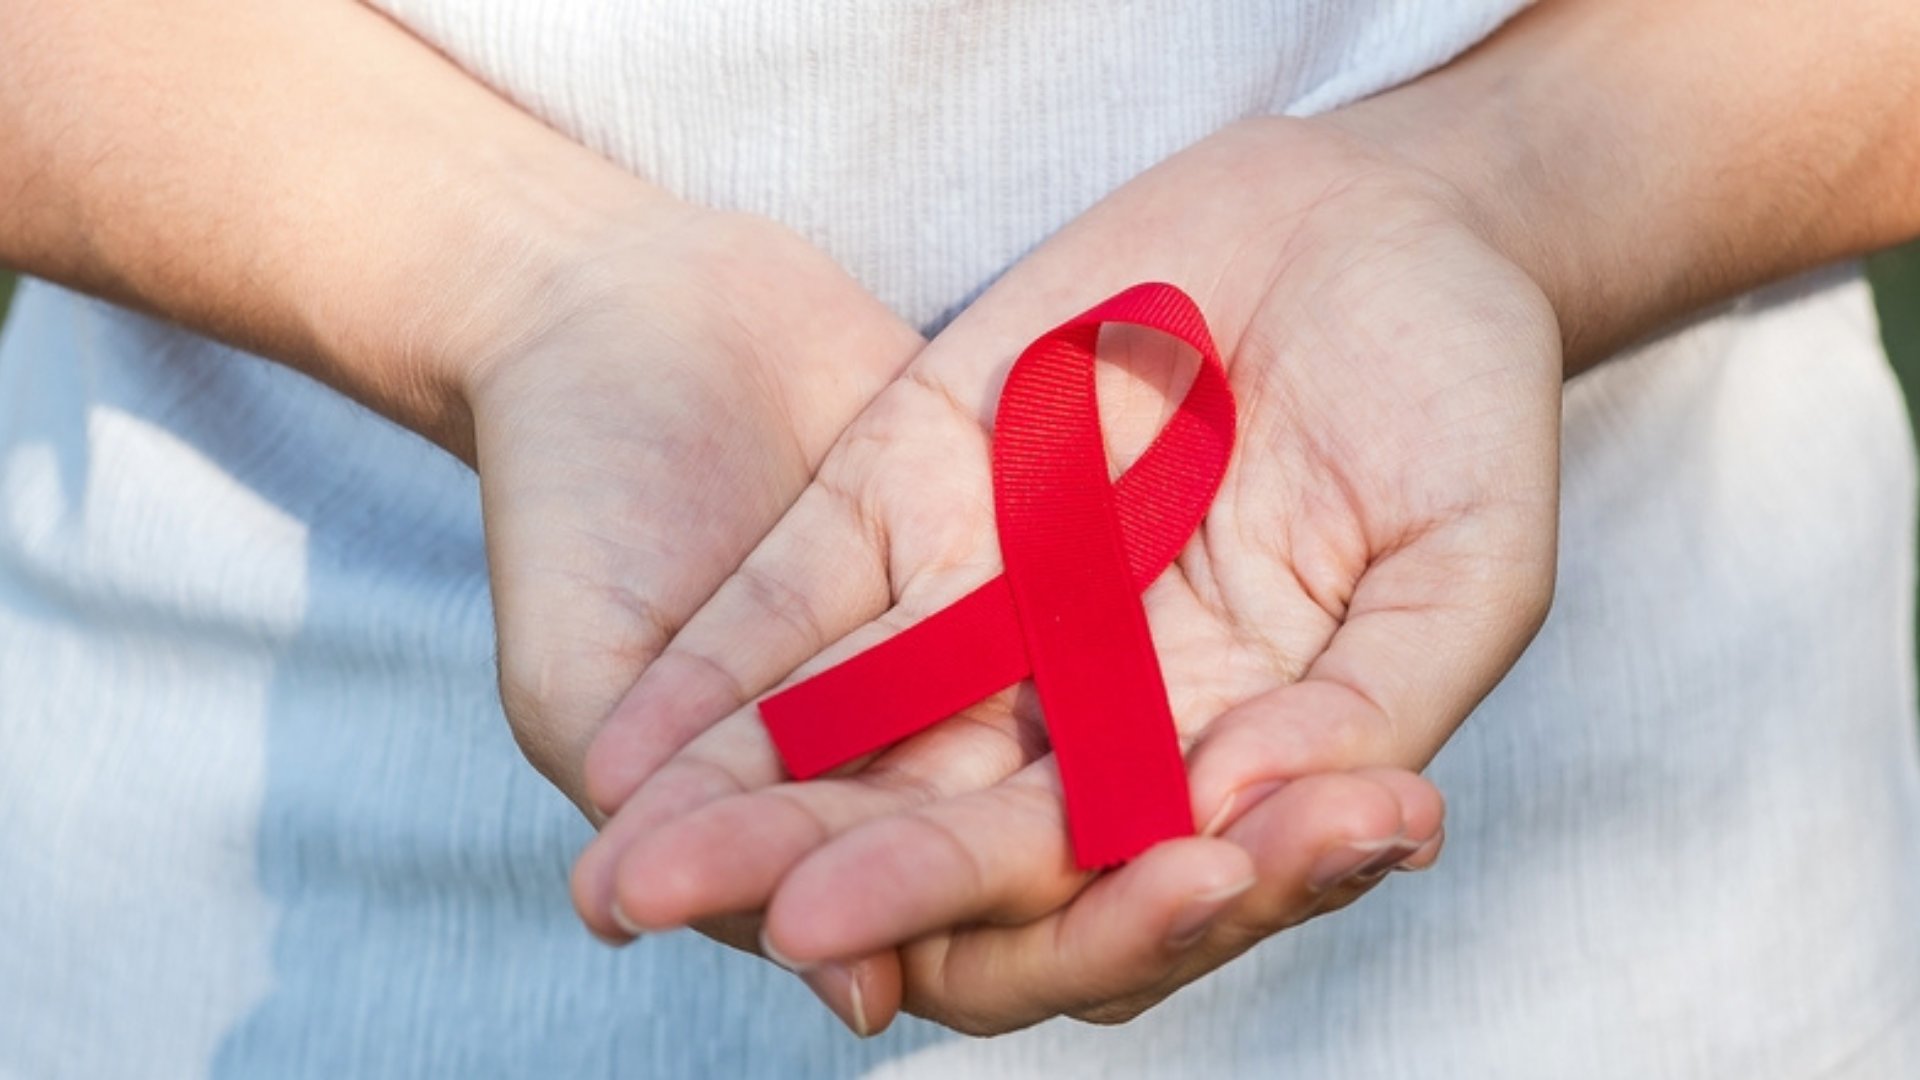 Uma pessoa segurando um laço vermelho. Este representa, durante o mês de março, o símbolo do combate e da conscientização ao câncer renal.